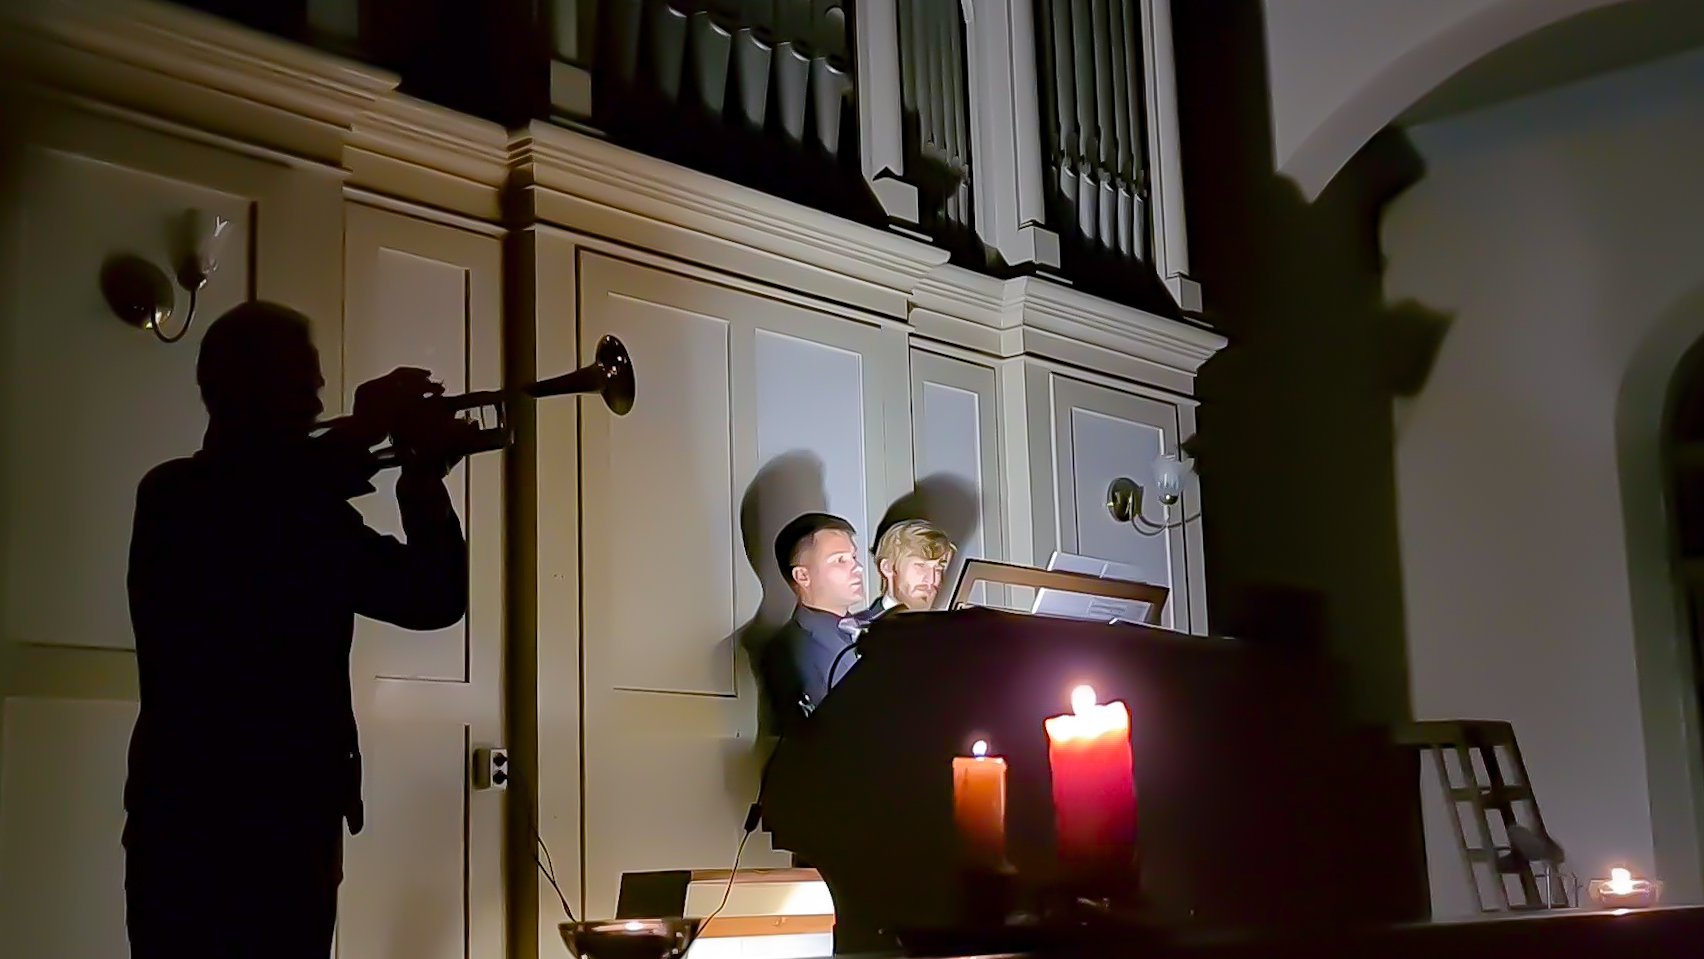 Исполнение органной музыки на историческом клавишно-духовом органе храма святого Петра